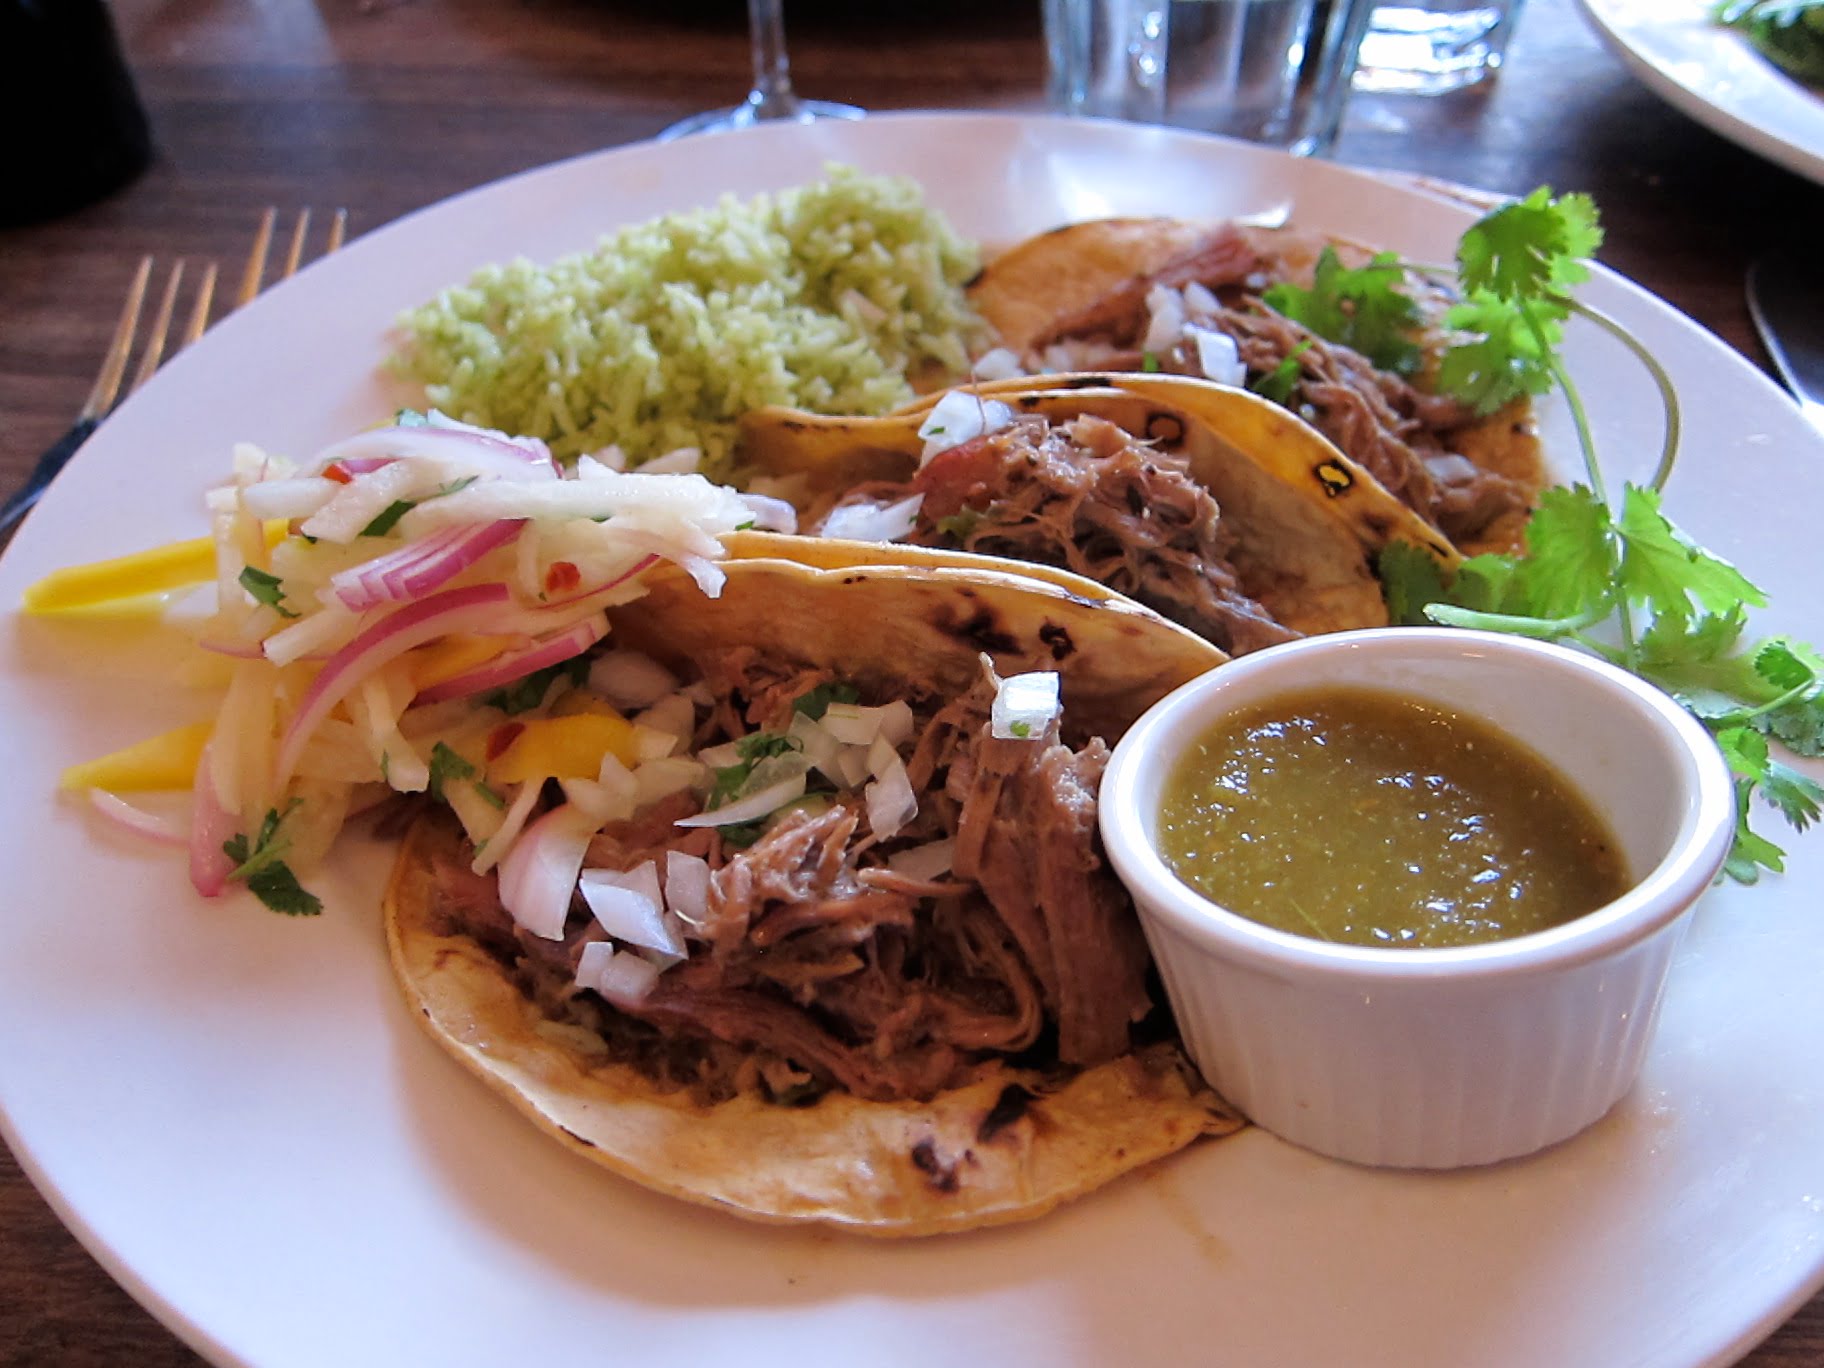 Viande d'agneau rôtie en Taco servie avec une salade de légumes